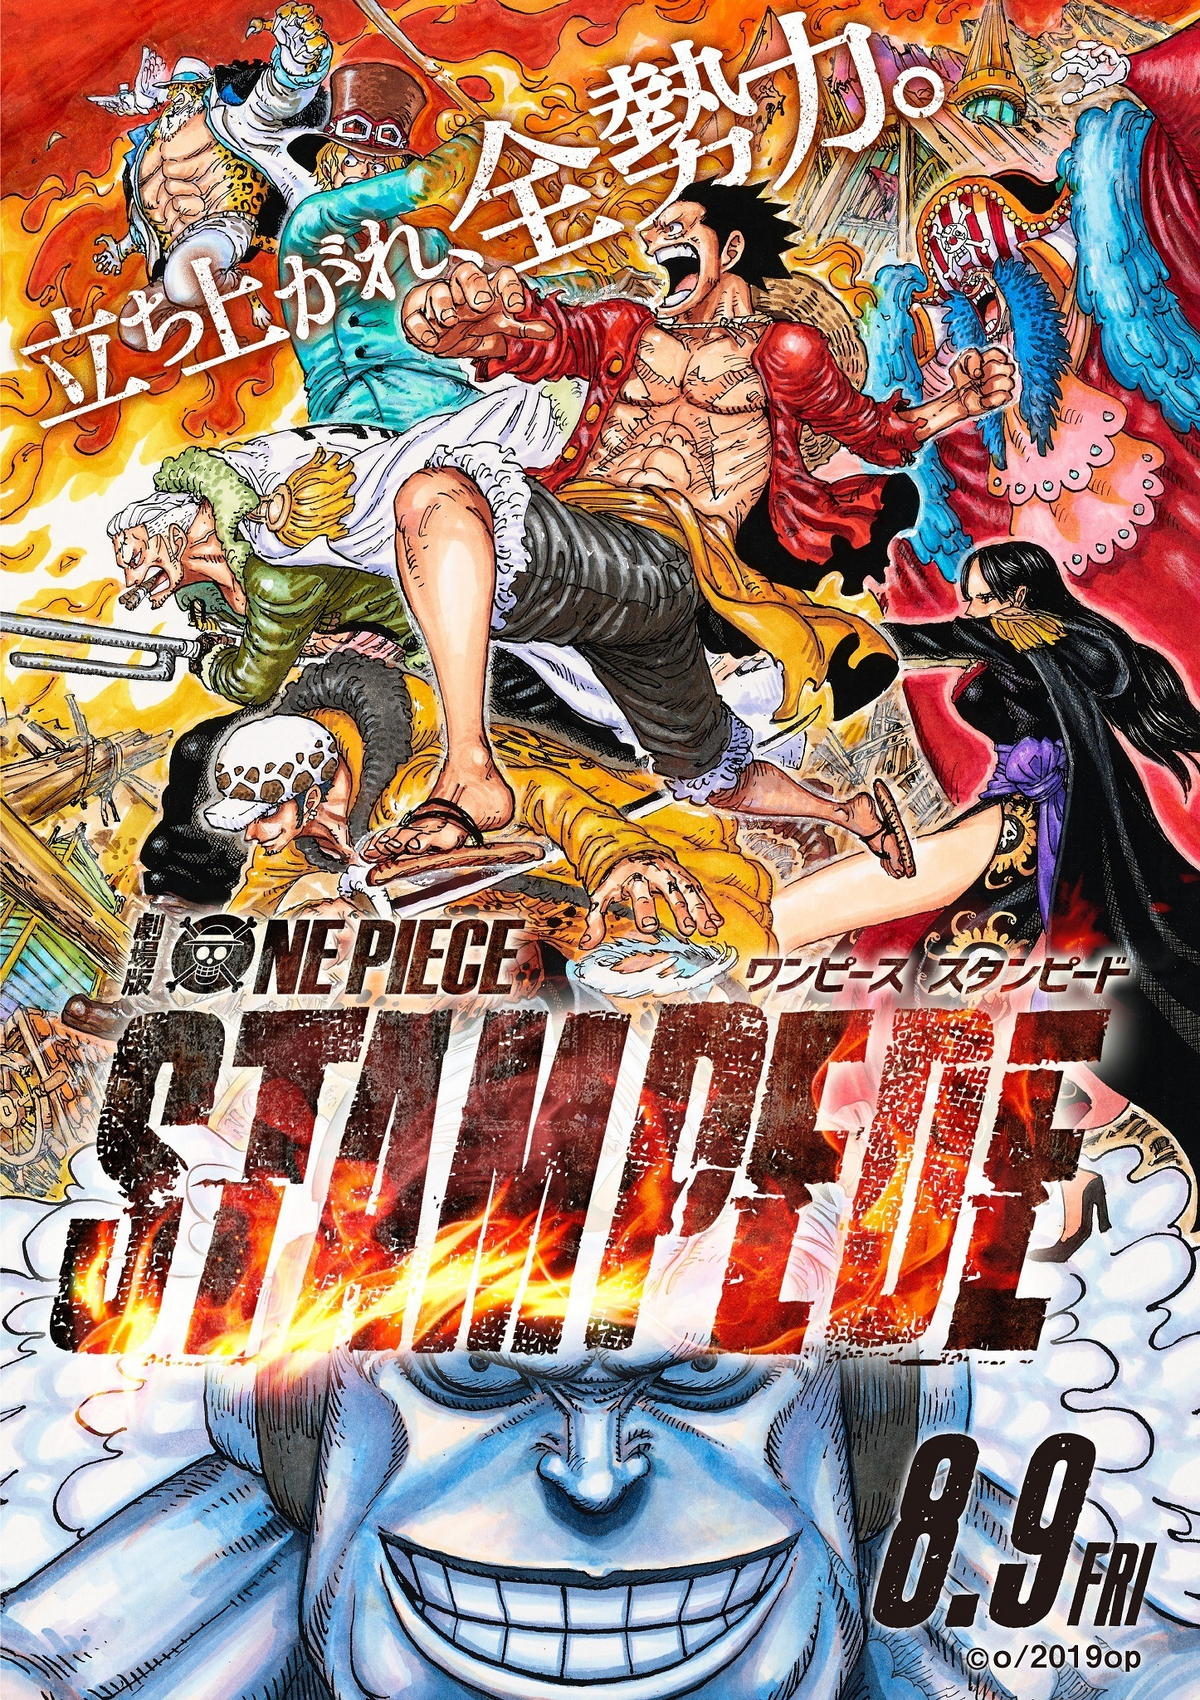 Kirigawa on X: 🚨STAMPEDE E GOLD NO HBO MAX!! Os filmes One Piece Stampede  e One Piece Film Gold já estão disponíveis com DUBLAGEM no HBO Max!!  #OnePieceHBOMax  / X